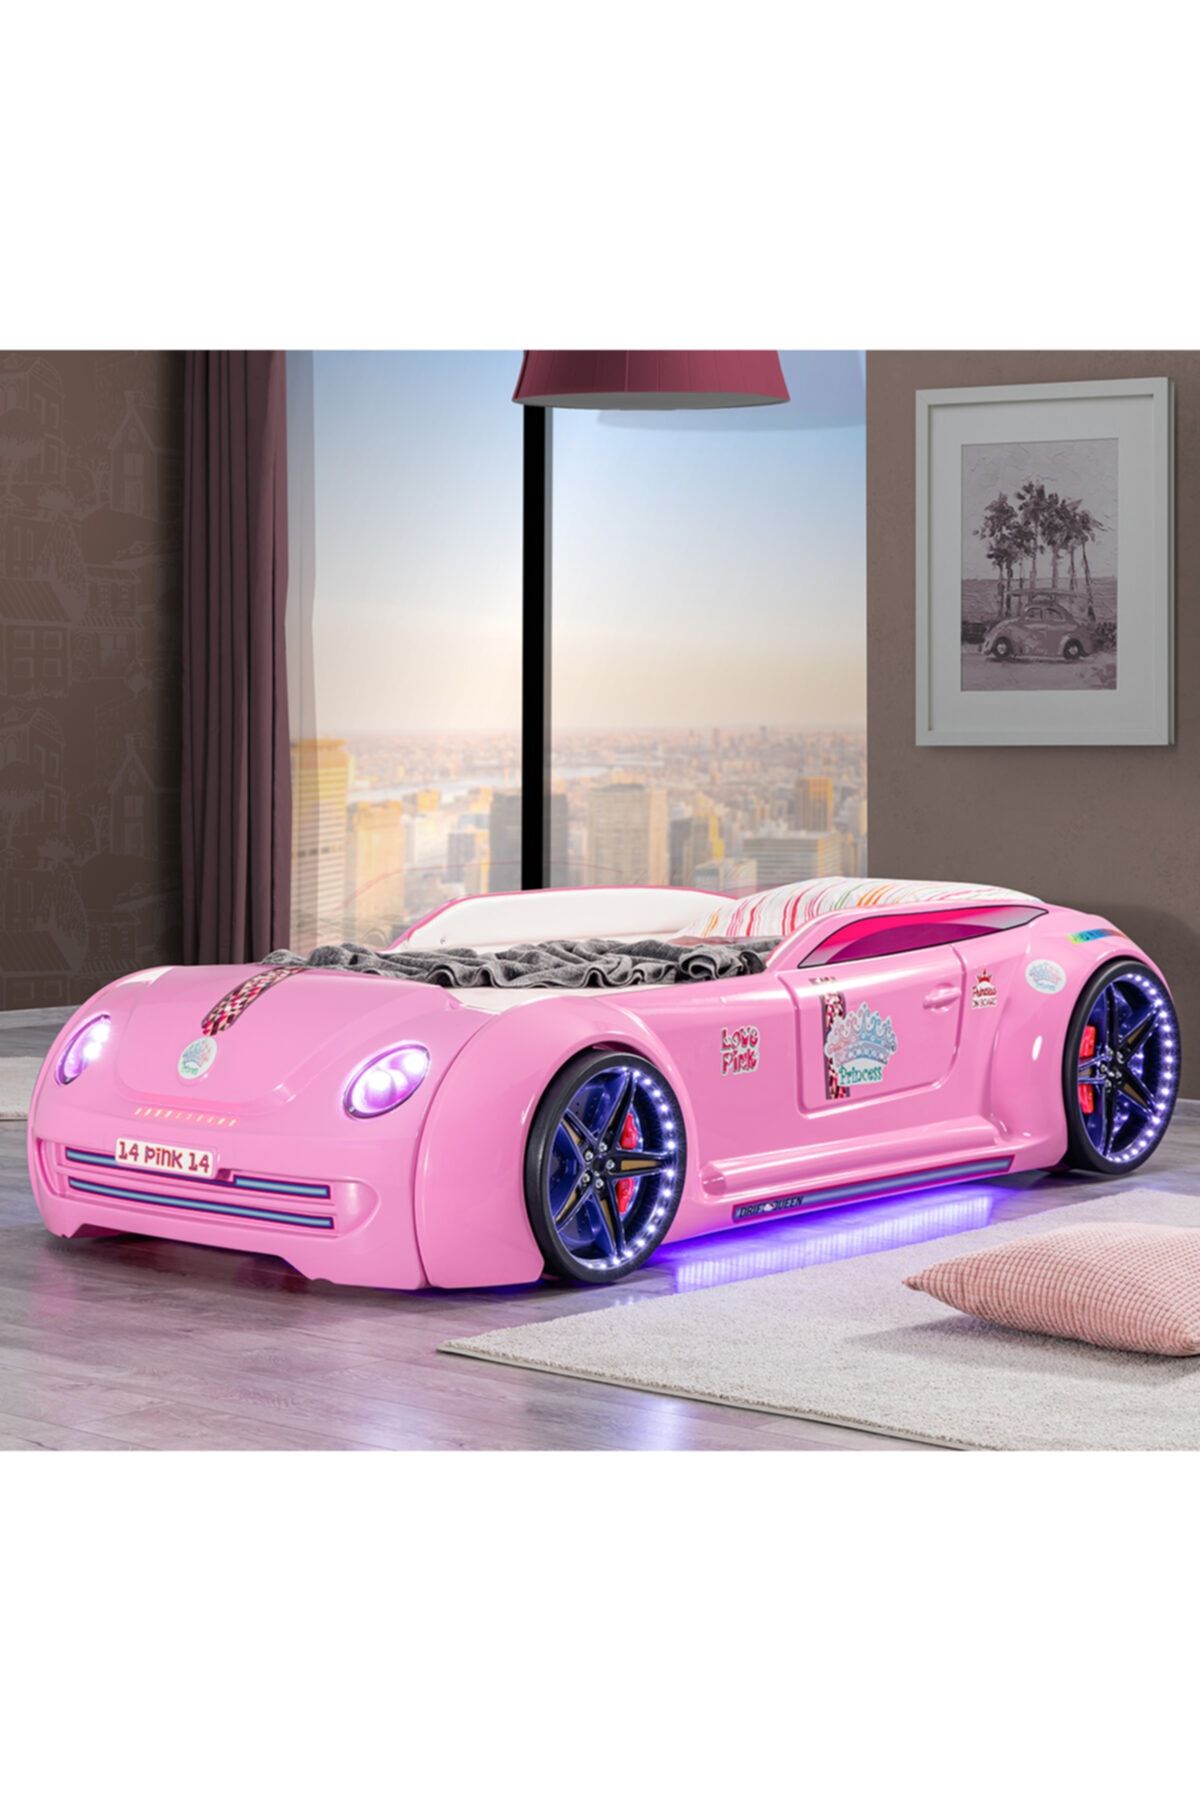 Setay Arabalı Yatak, Pink Cooper Full Ledli Arabalı Yatak